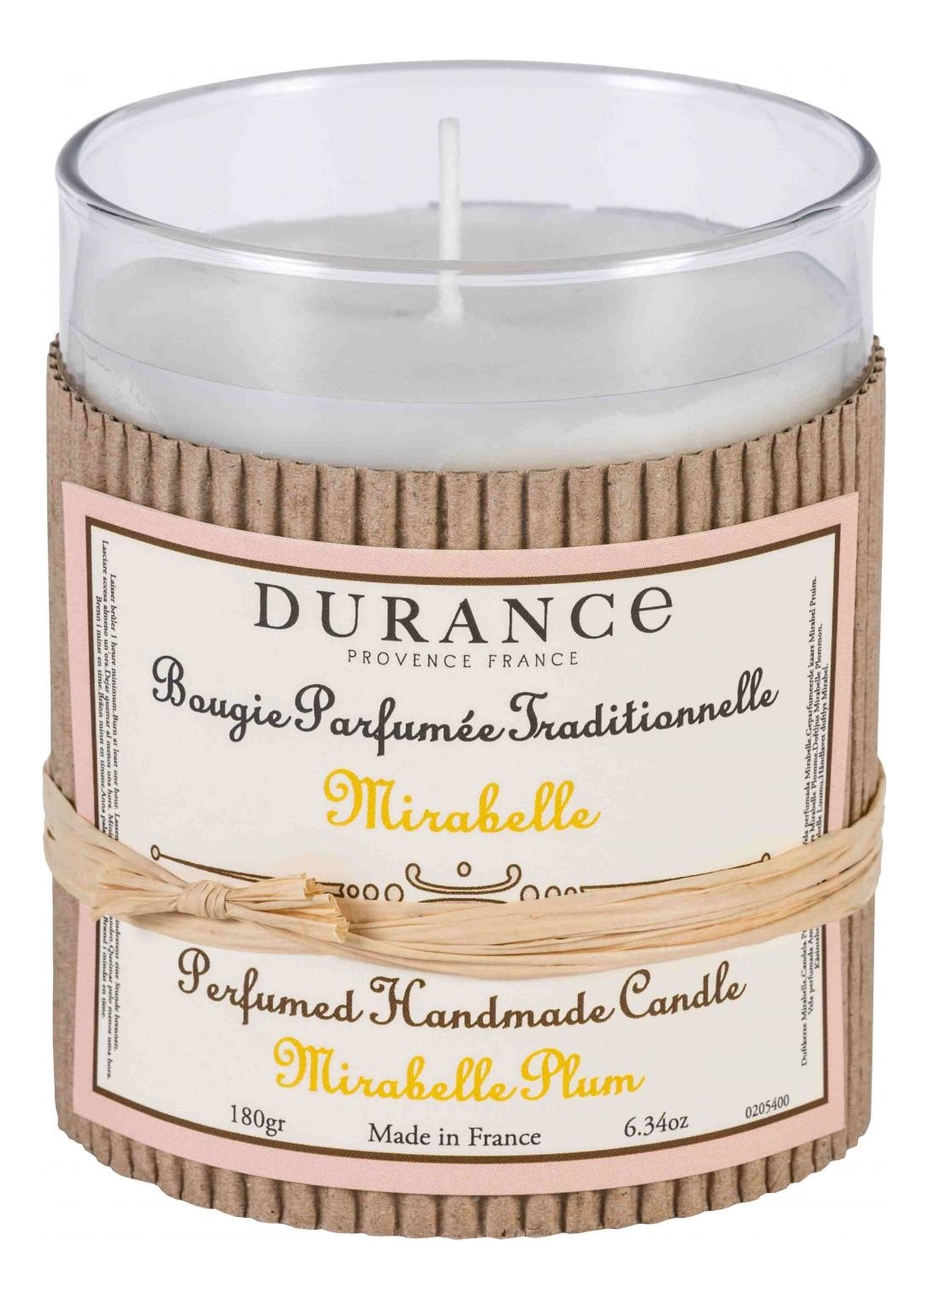 Ароматическая свеча Perfumed Handmade Candle Mirabelle Plum 180г ароматическая свеча perfumed candle pomegranate 180г гранат